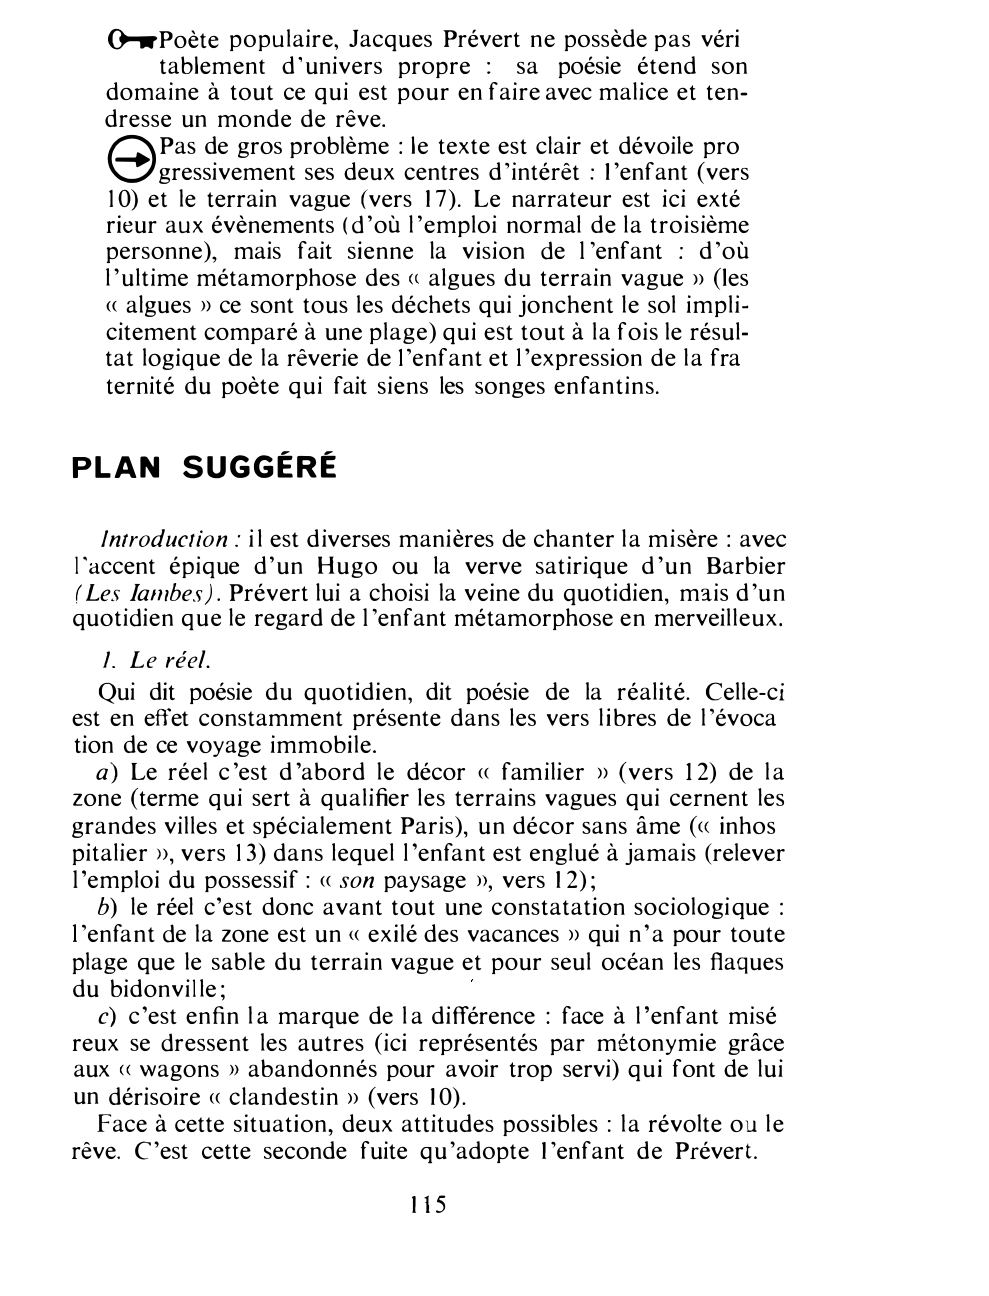 Prévisualisation du document Jacques Prévert, Grand Bal du Printemps. Commentaire composé